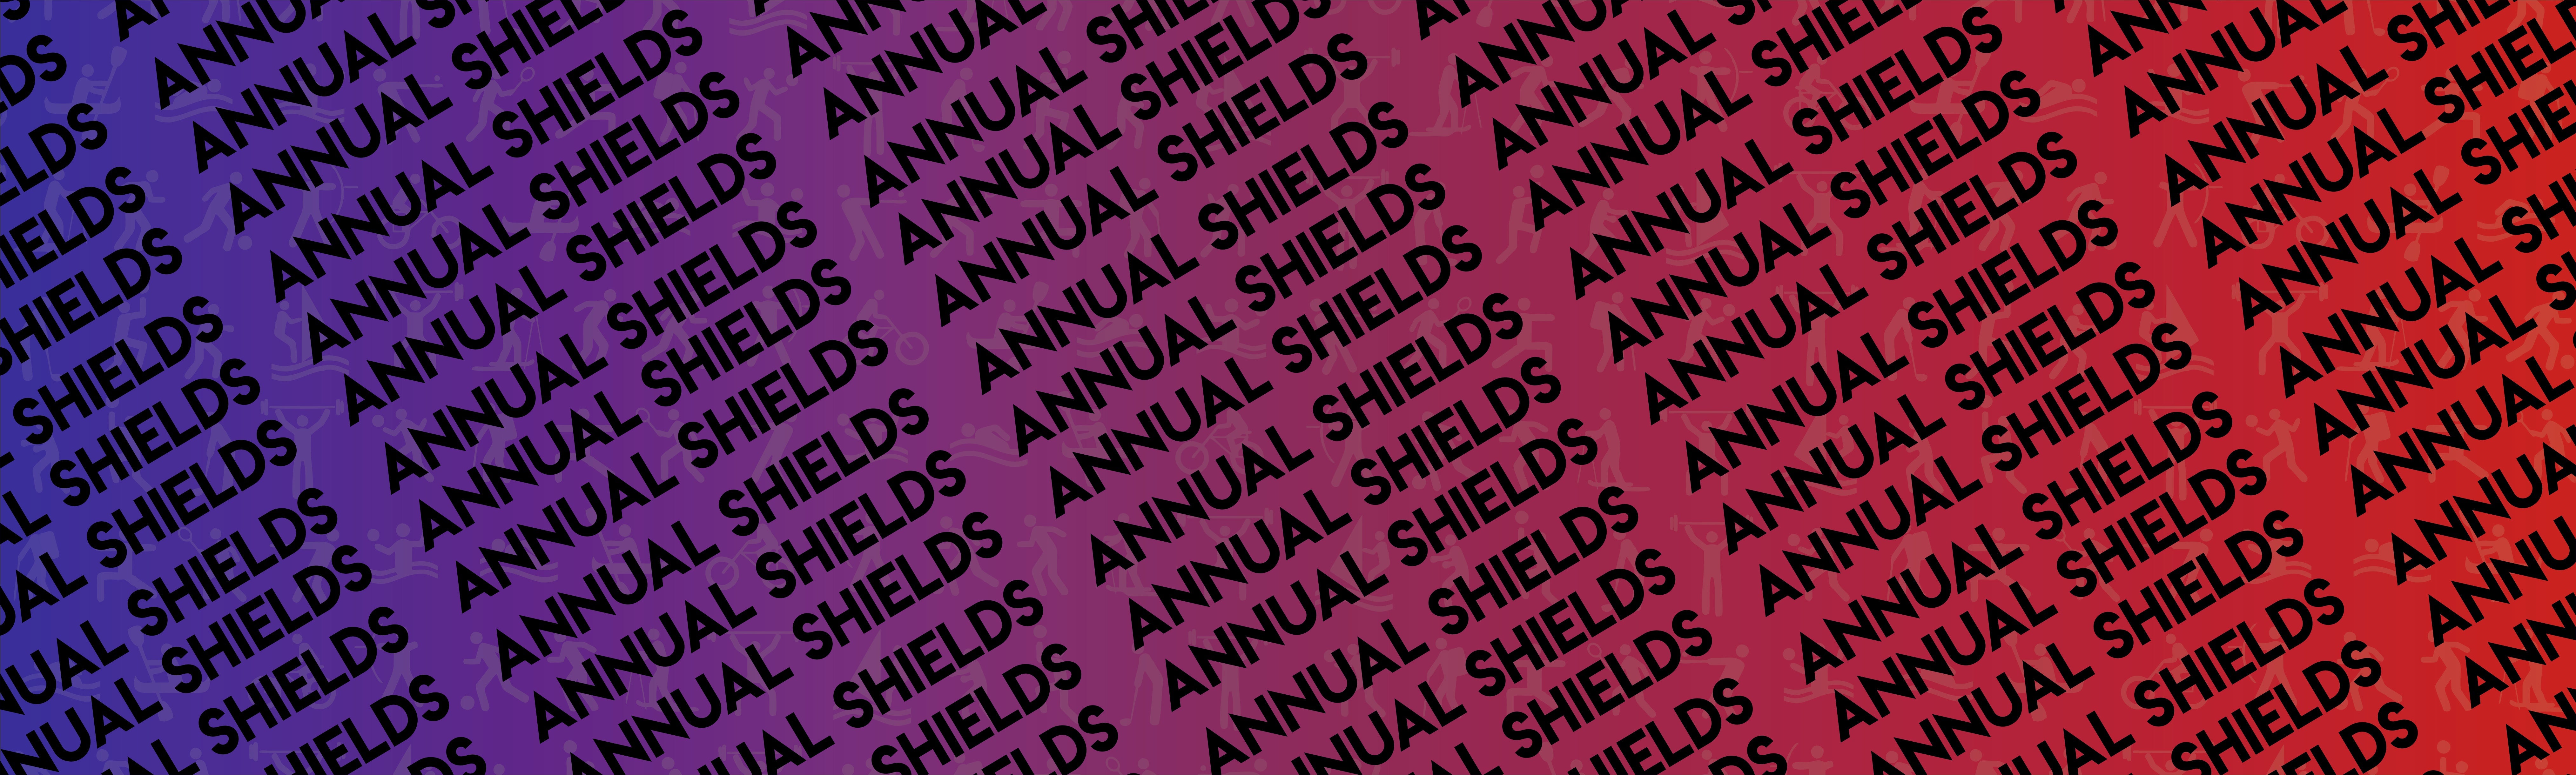 Annual Shields